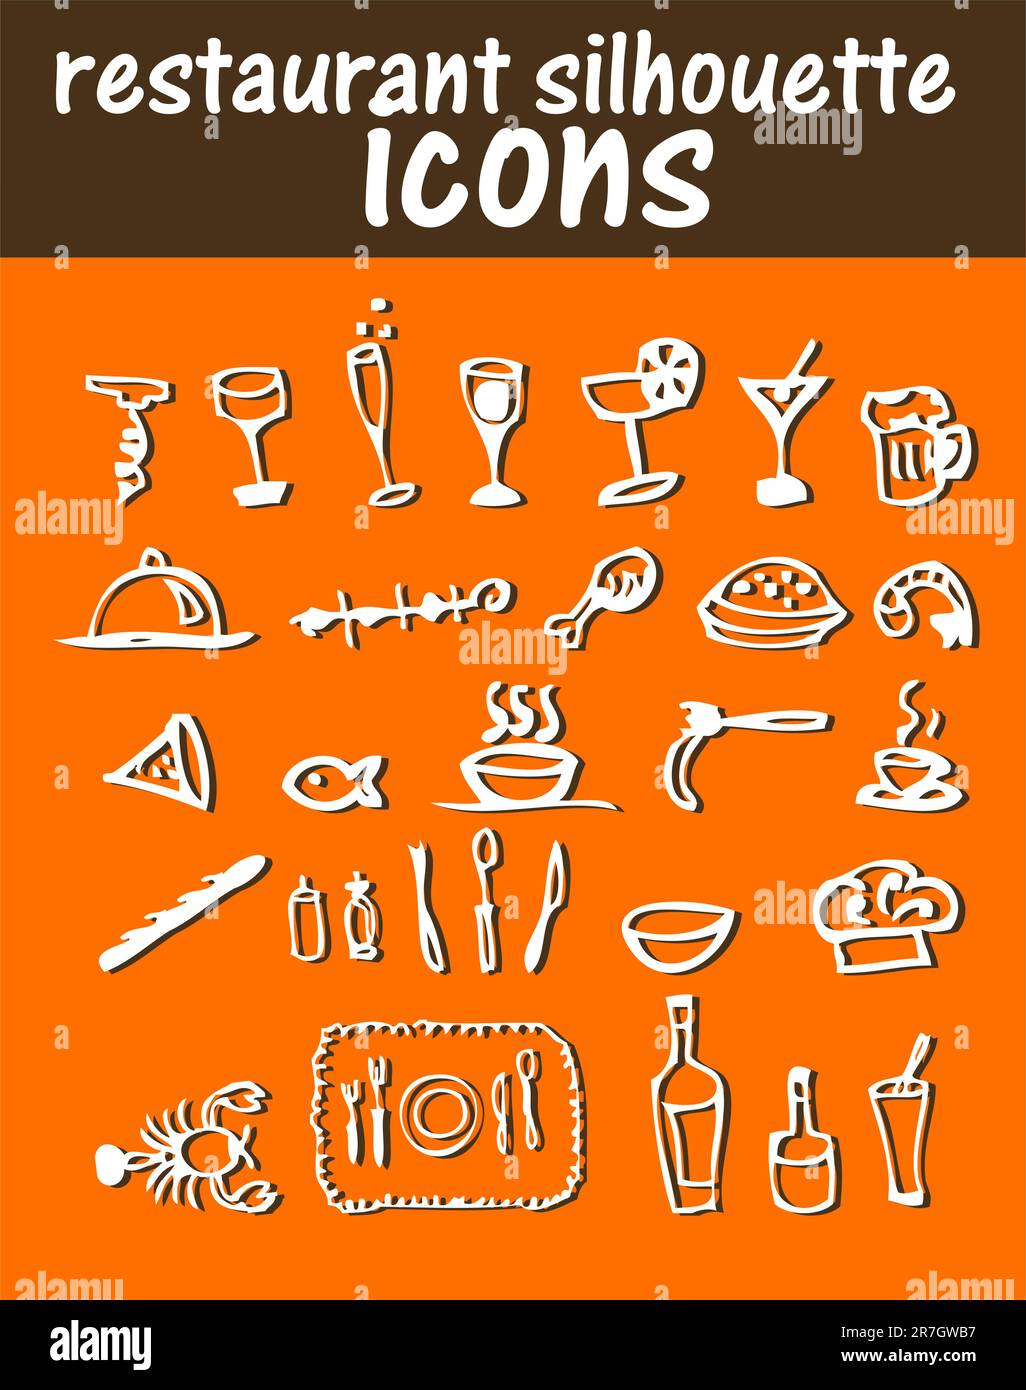 Adesivi, icone, emblemi per la silhouette del ristorante Illustrazione Vettoriale